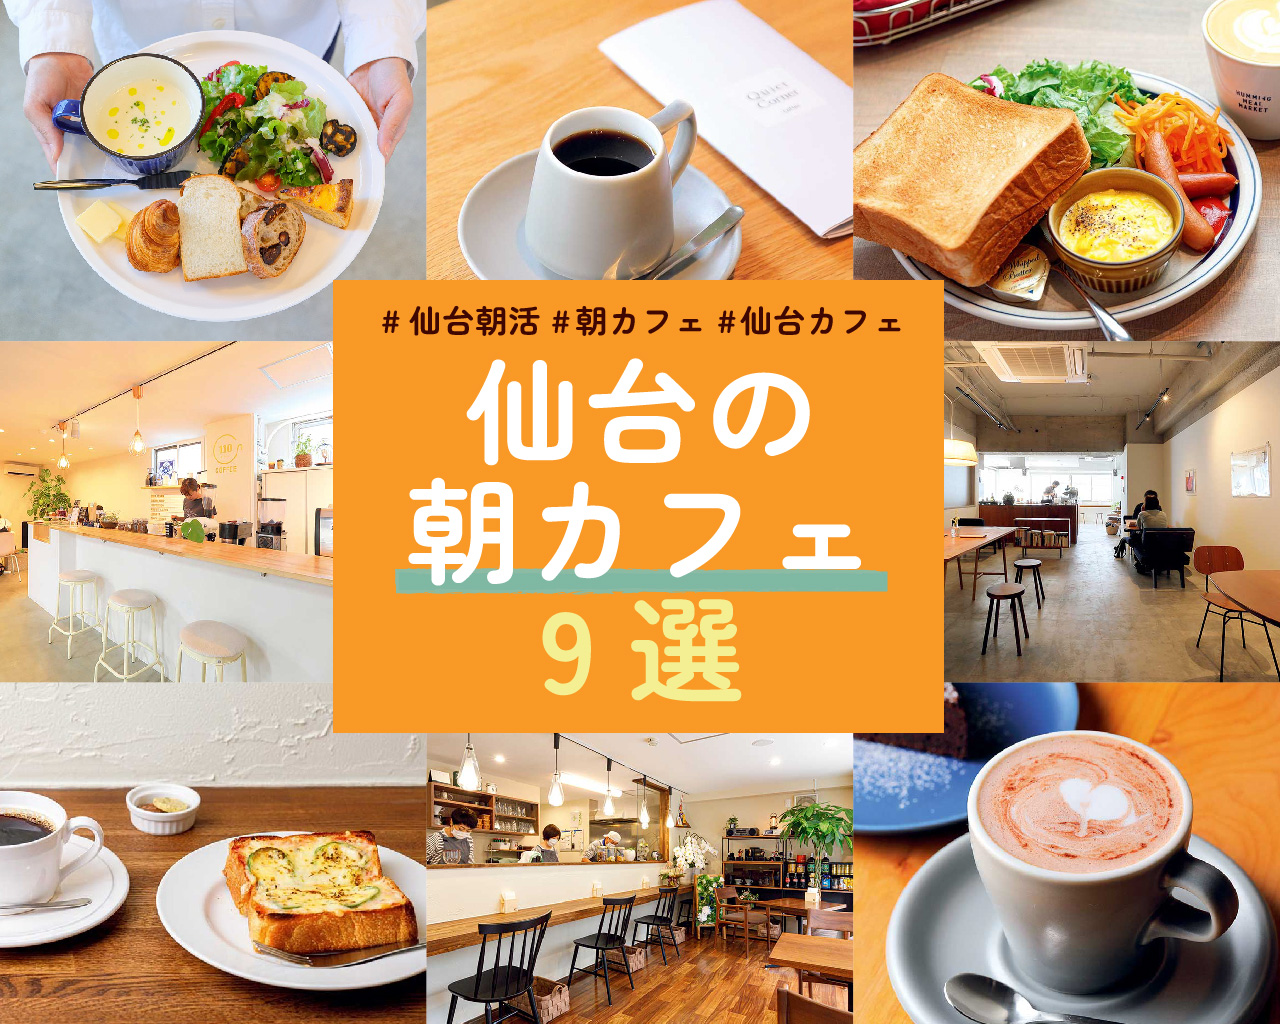 仙台朝活 優雅にモーニングも 仙台で朝から楽しめるカフェ9選 日刊せんだいタウン情報s Style Web